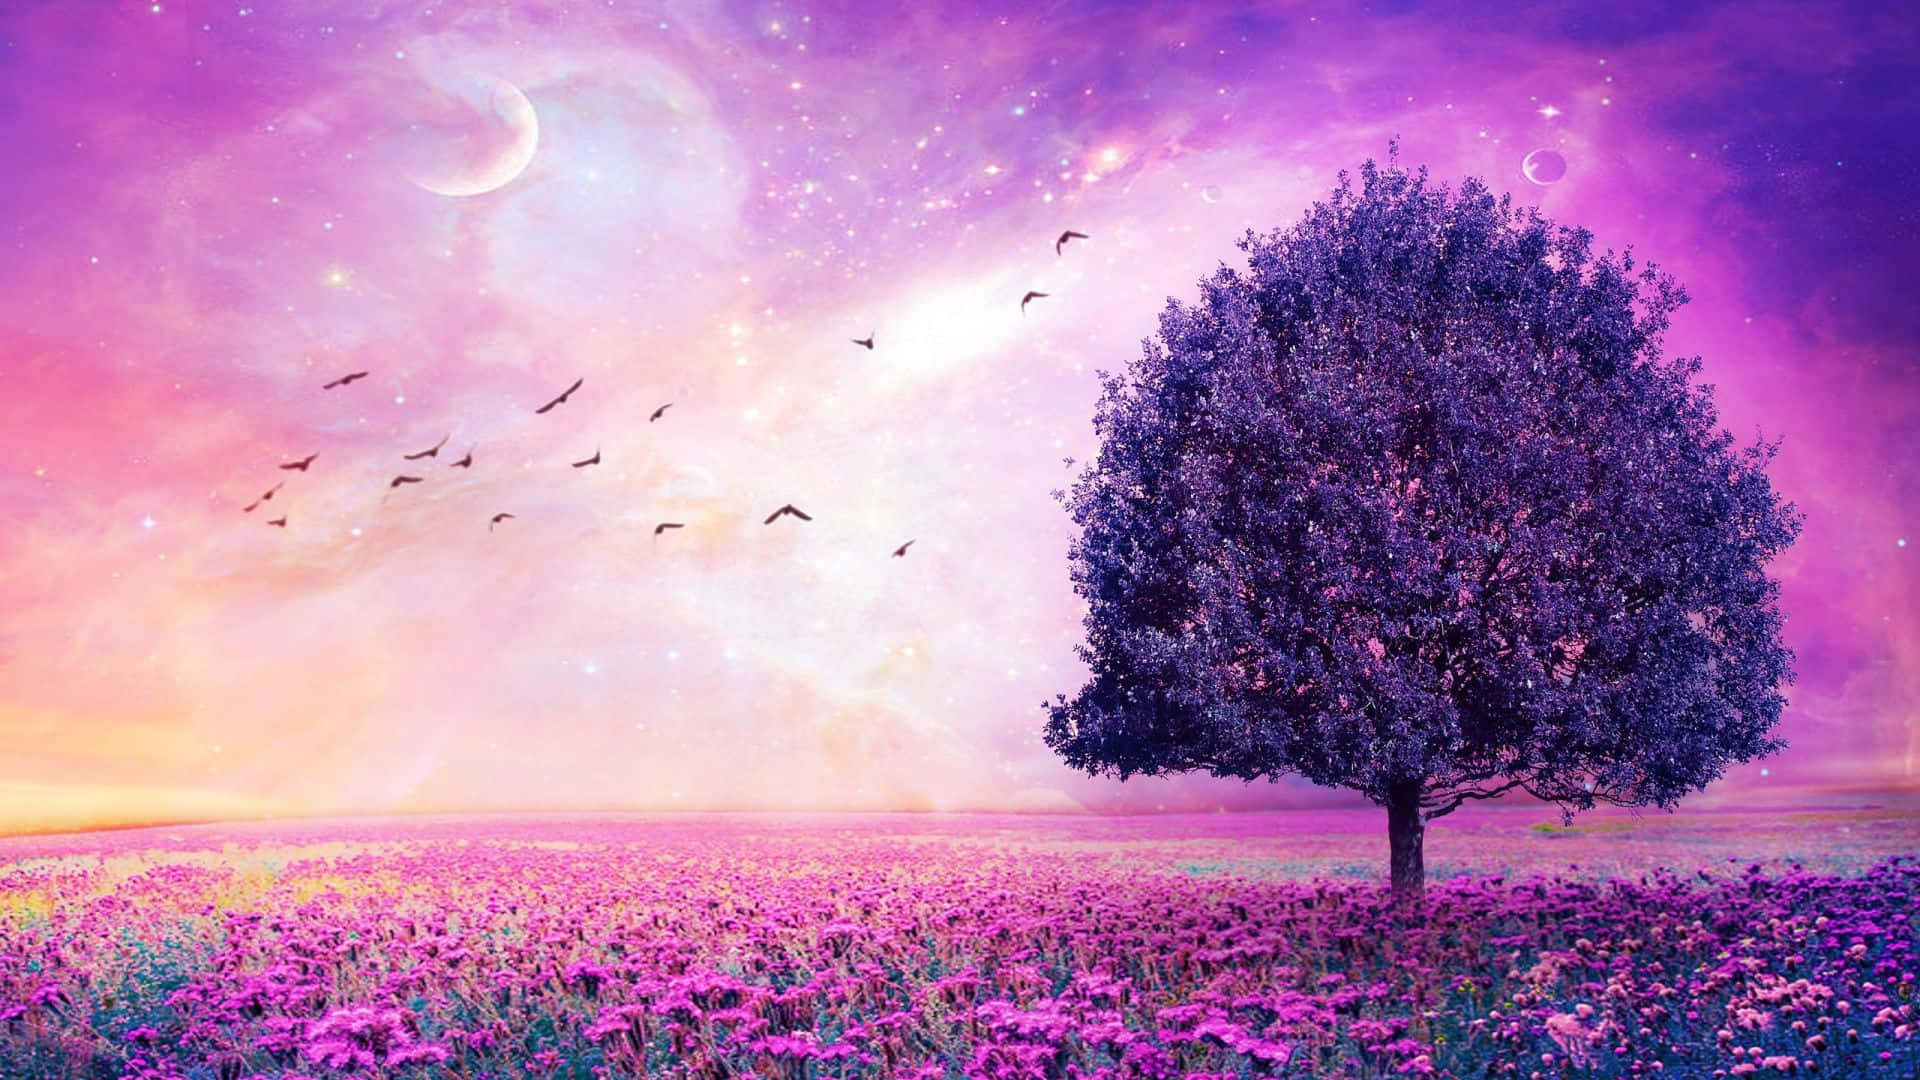 Pretty Purple Tree In A Field Of Flowers Wallpaper